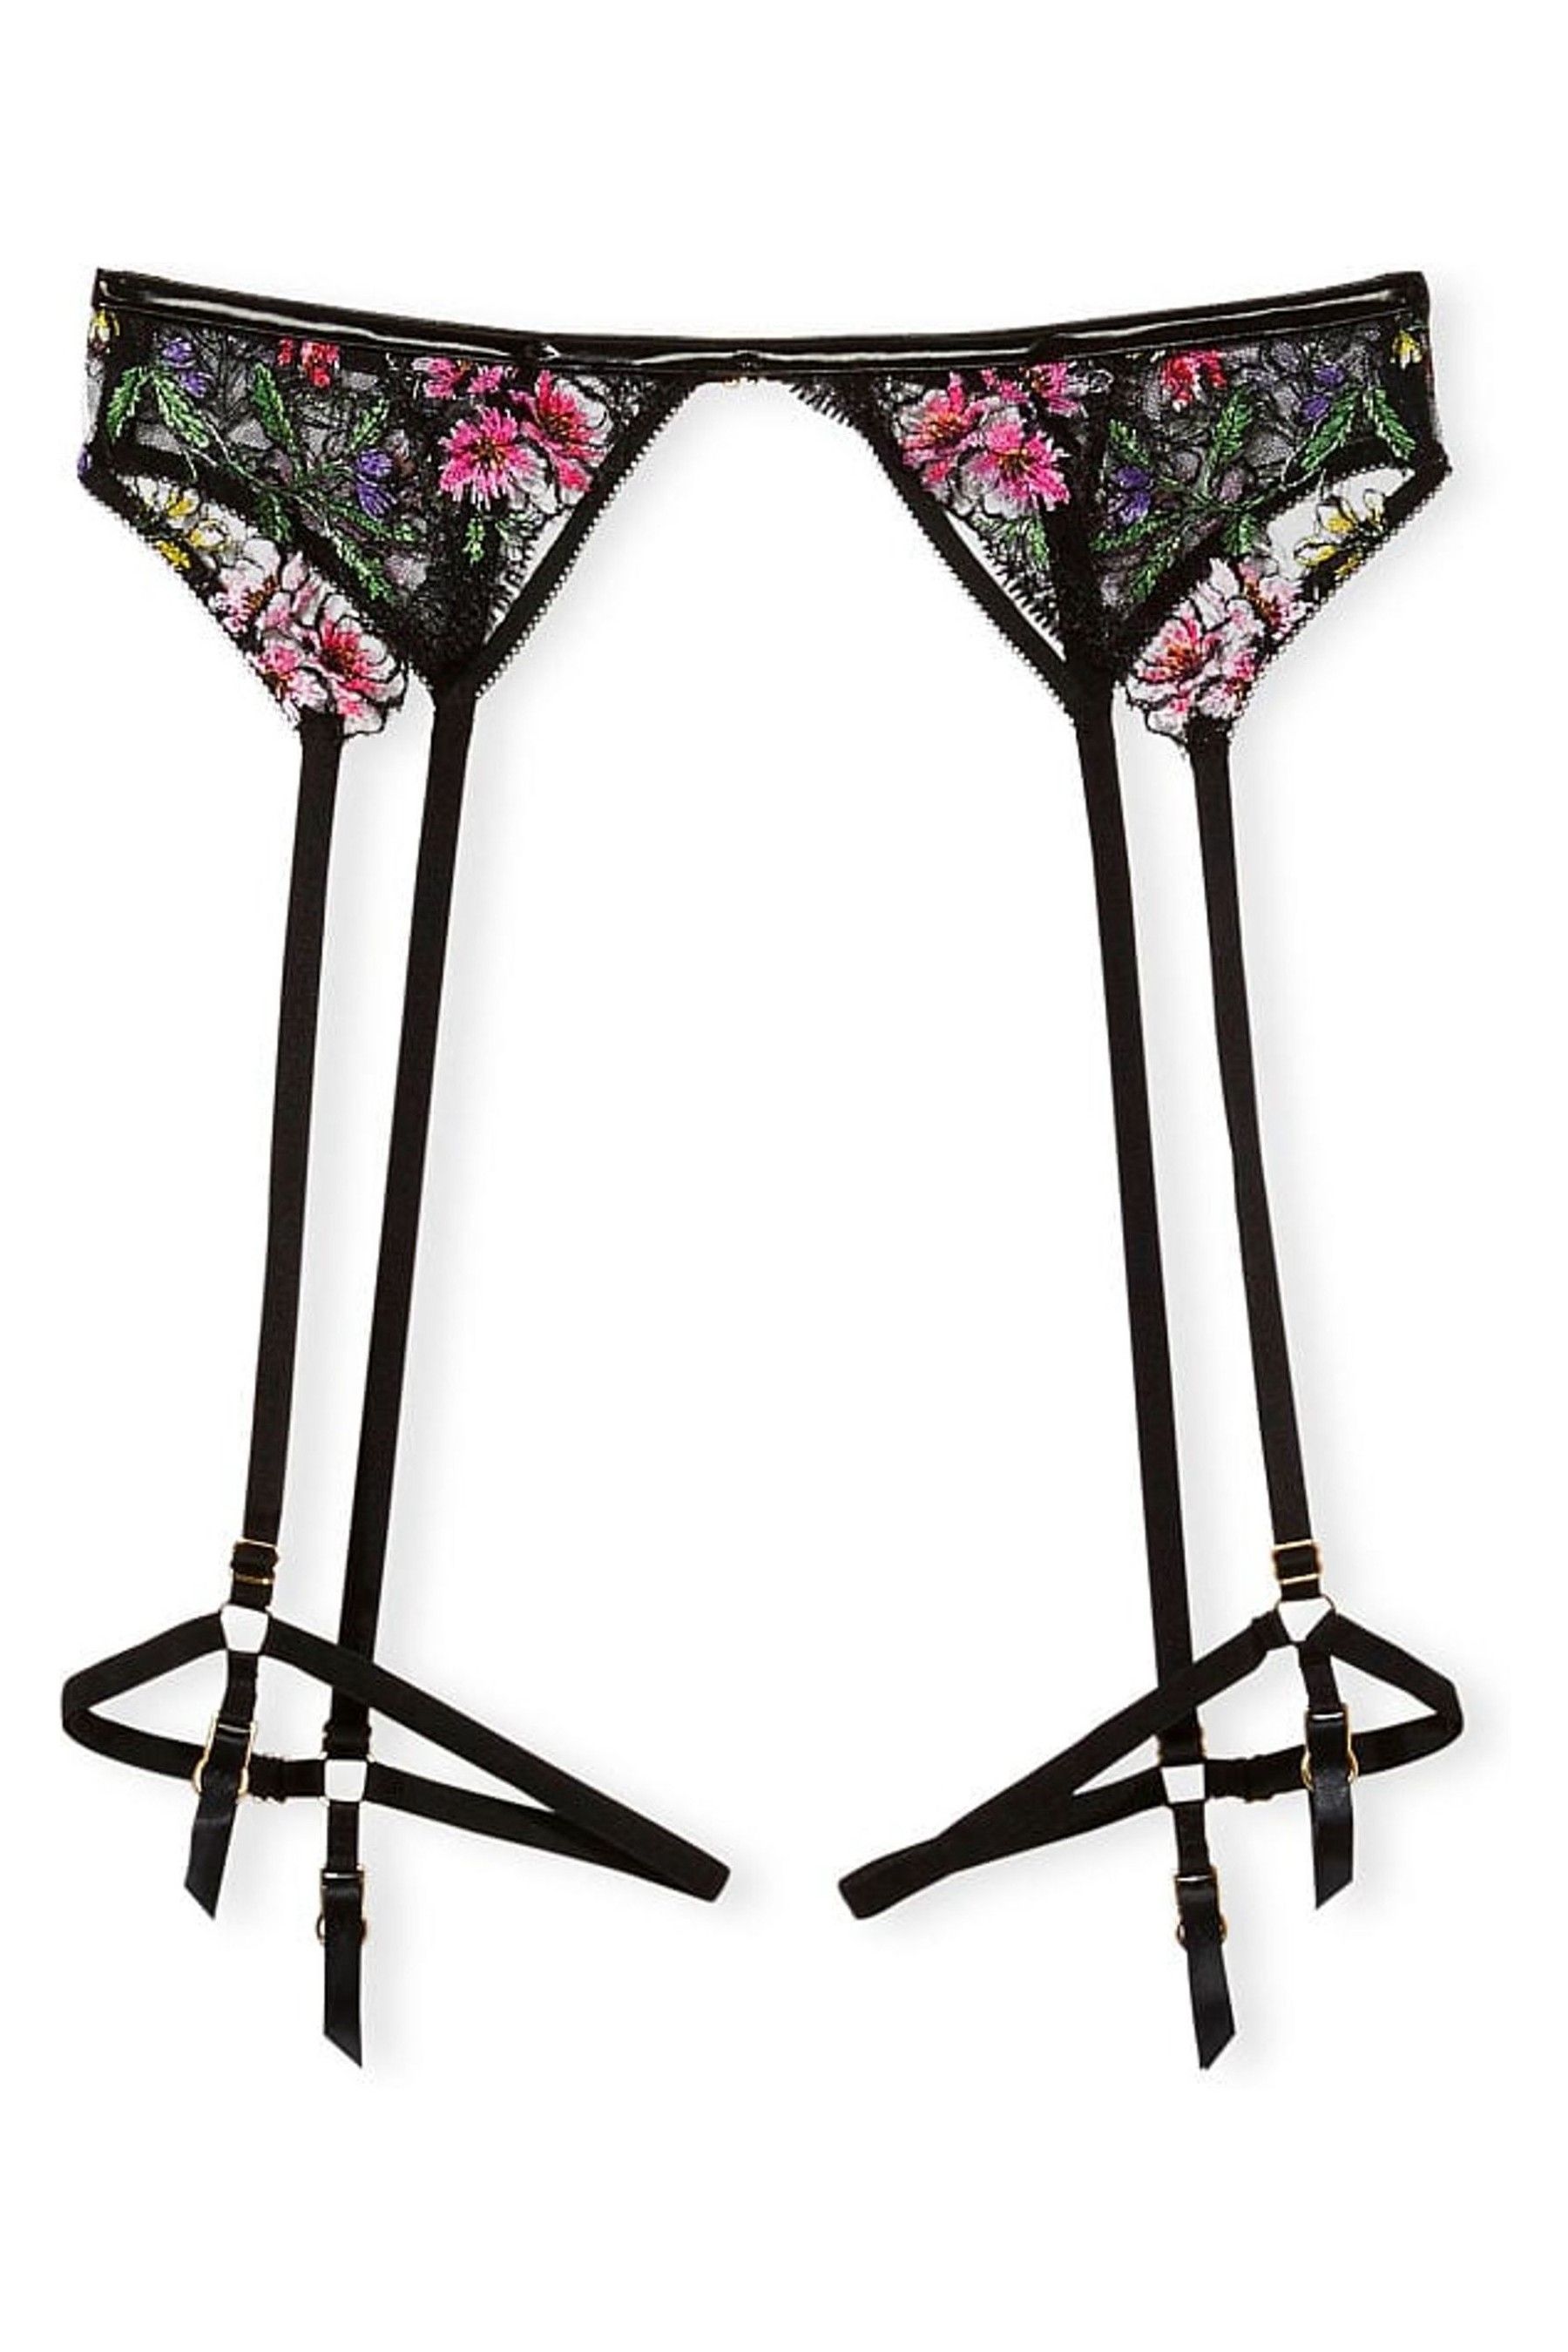 Buy Victoria S Secret Floral Embroidered Garter Belt From The Victoria S Secret Uk Online Shop